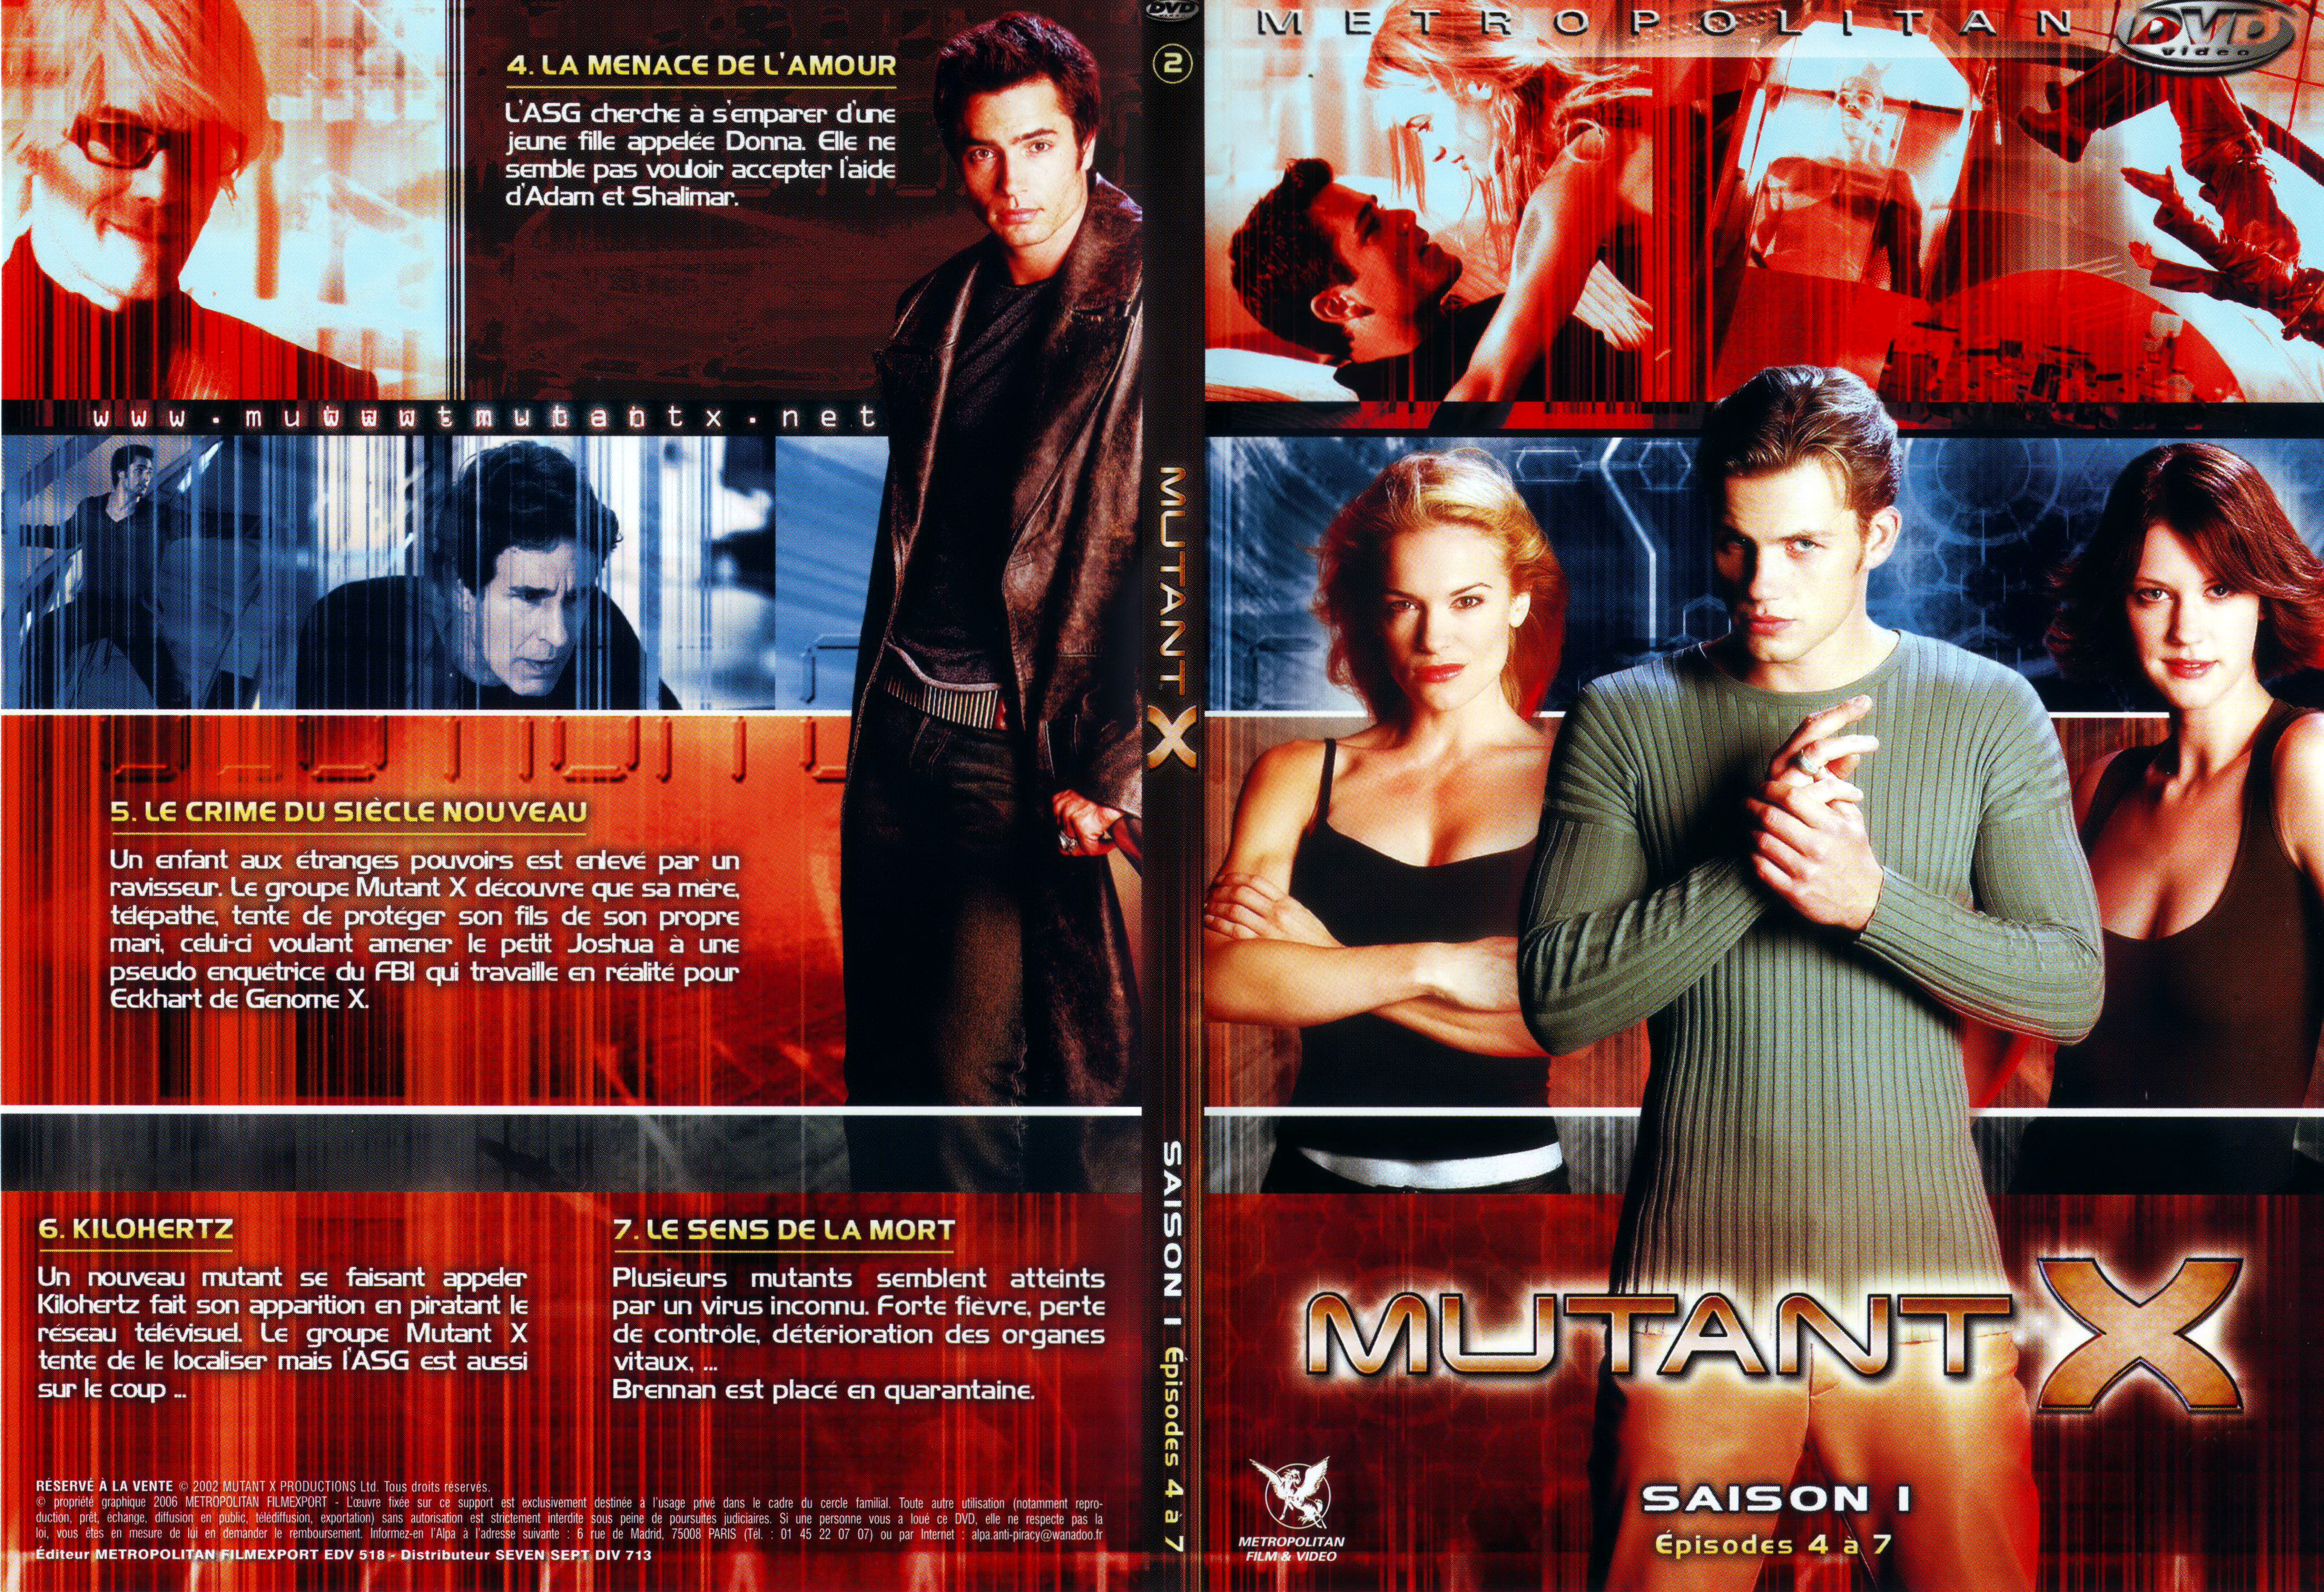 Jaquette DVD Mutant X saison 1 DVD 2